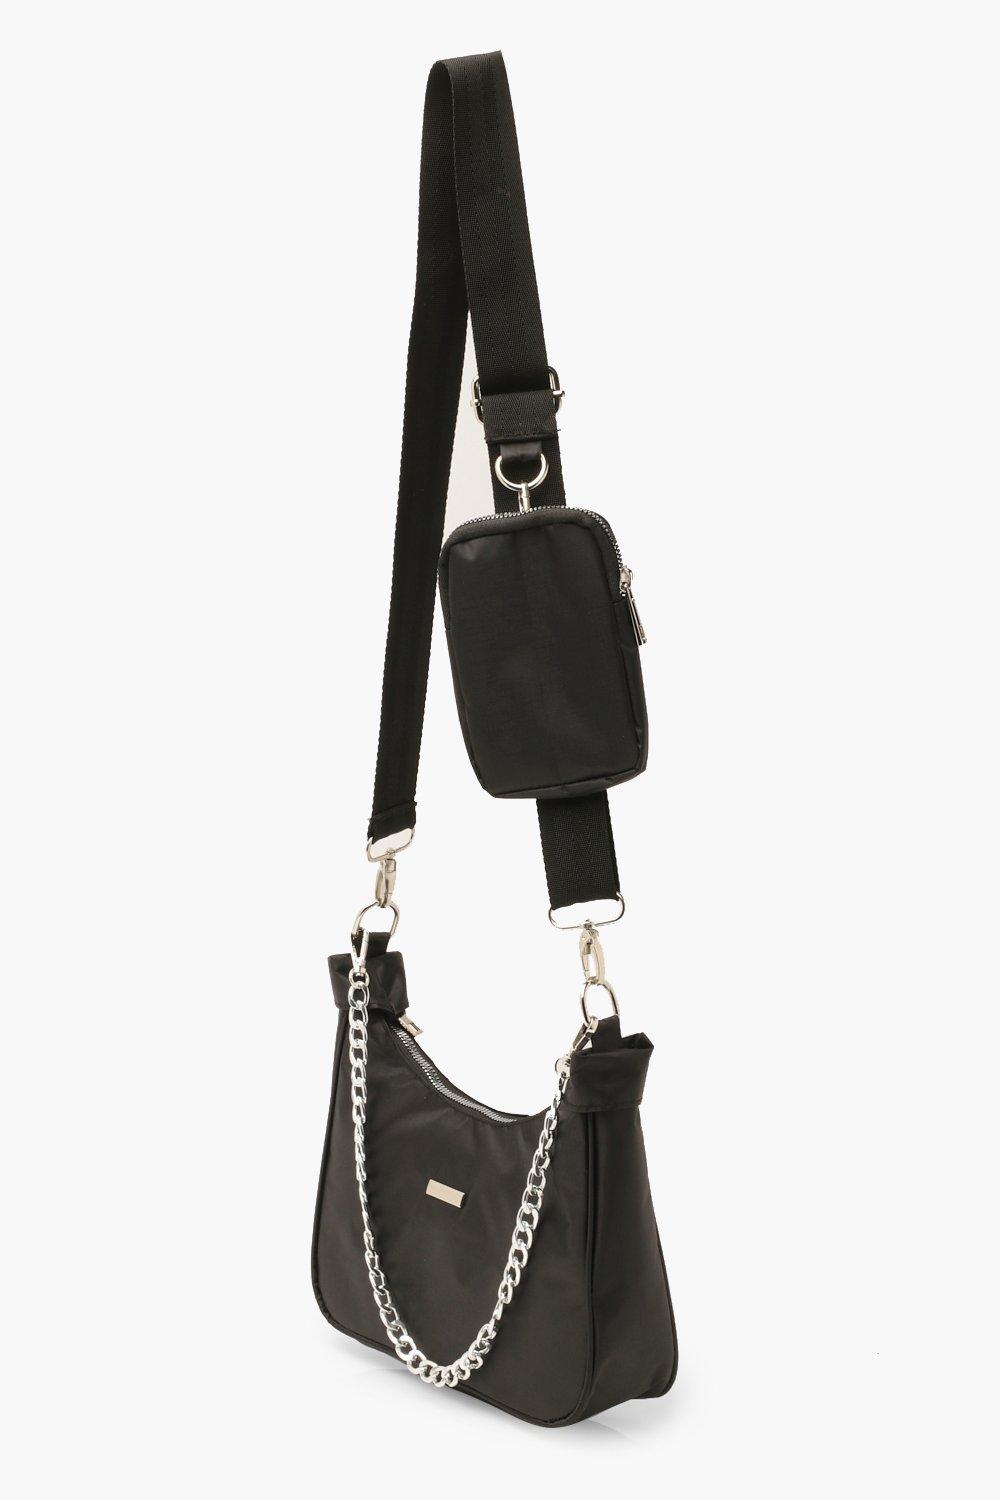 PMUYBHF Small Handbags for Women Black Crossbody Bags for Women Long Strap  Women'S Flower Mini Vertical Multifunctional Mobile Phone Bag Crossbody Bag